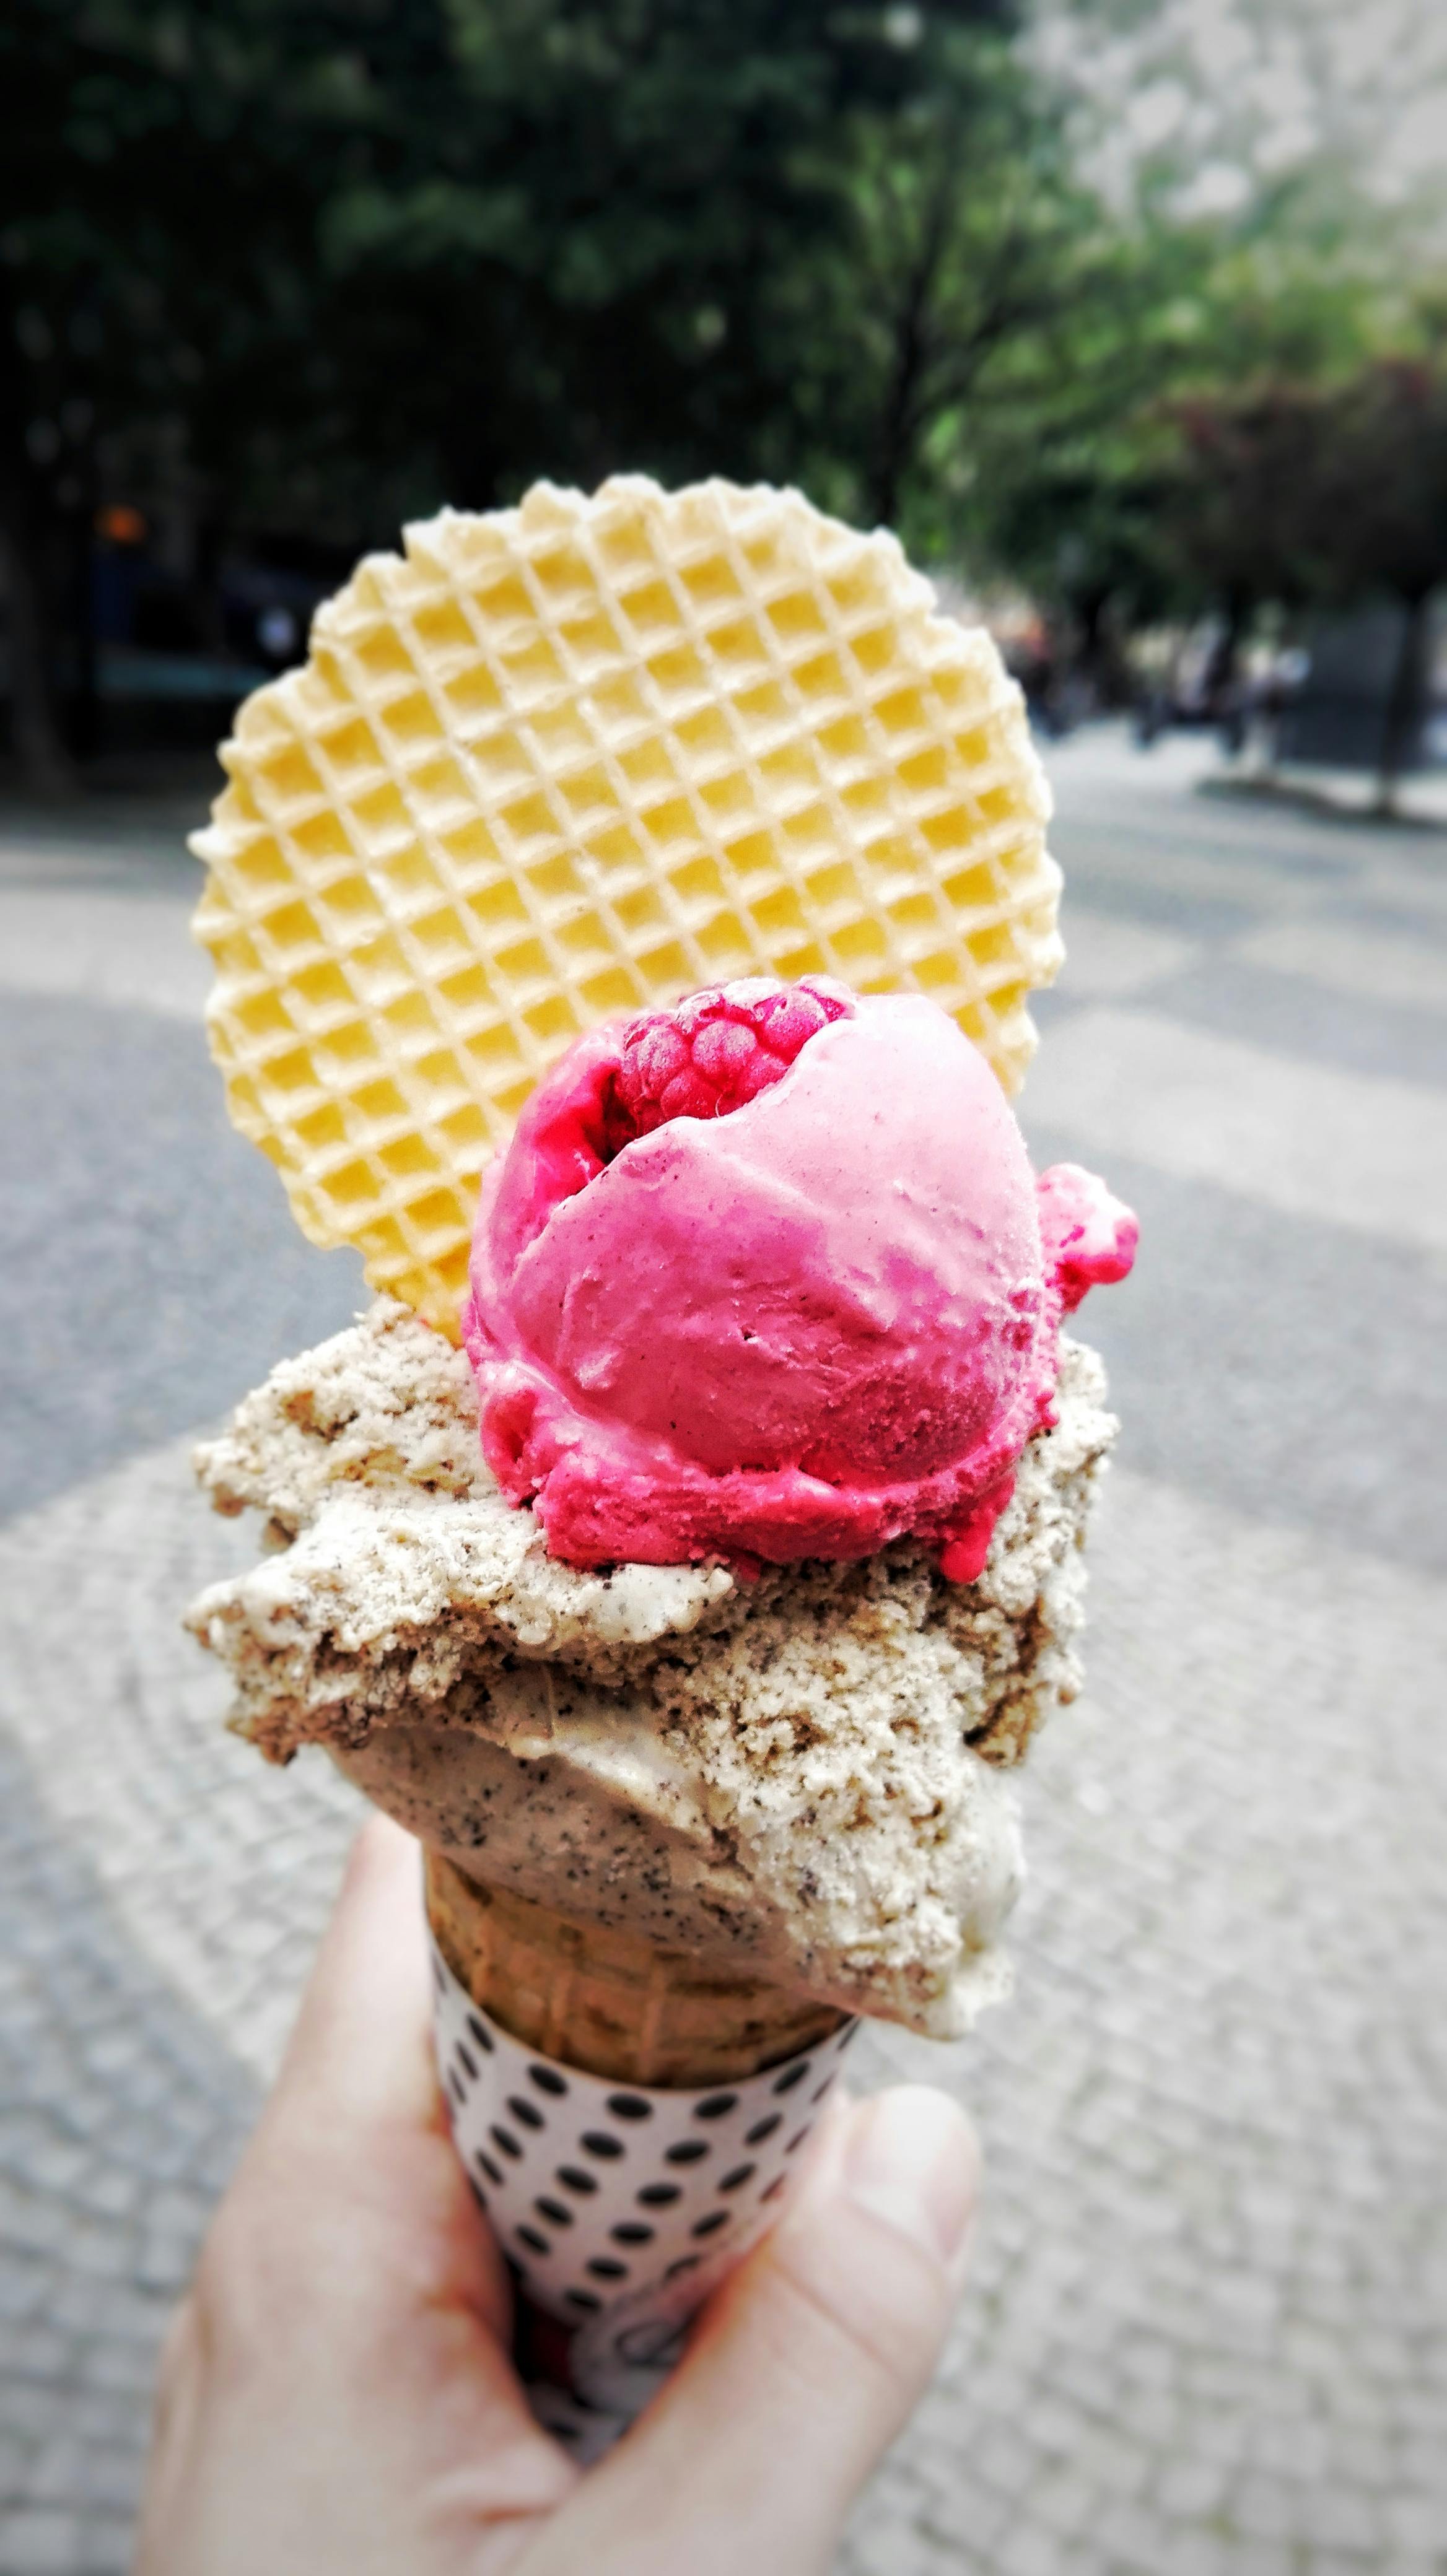 Free stock photo of ice cream, raspberry